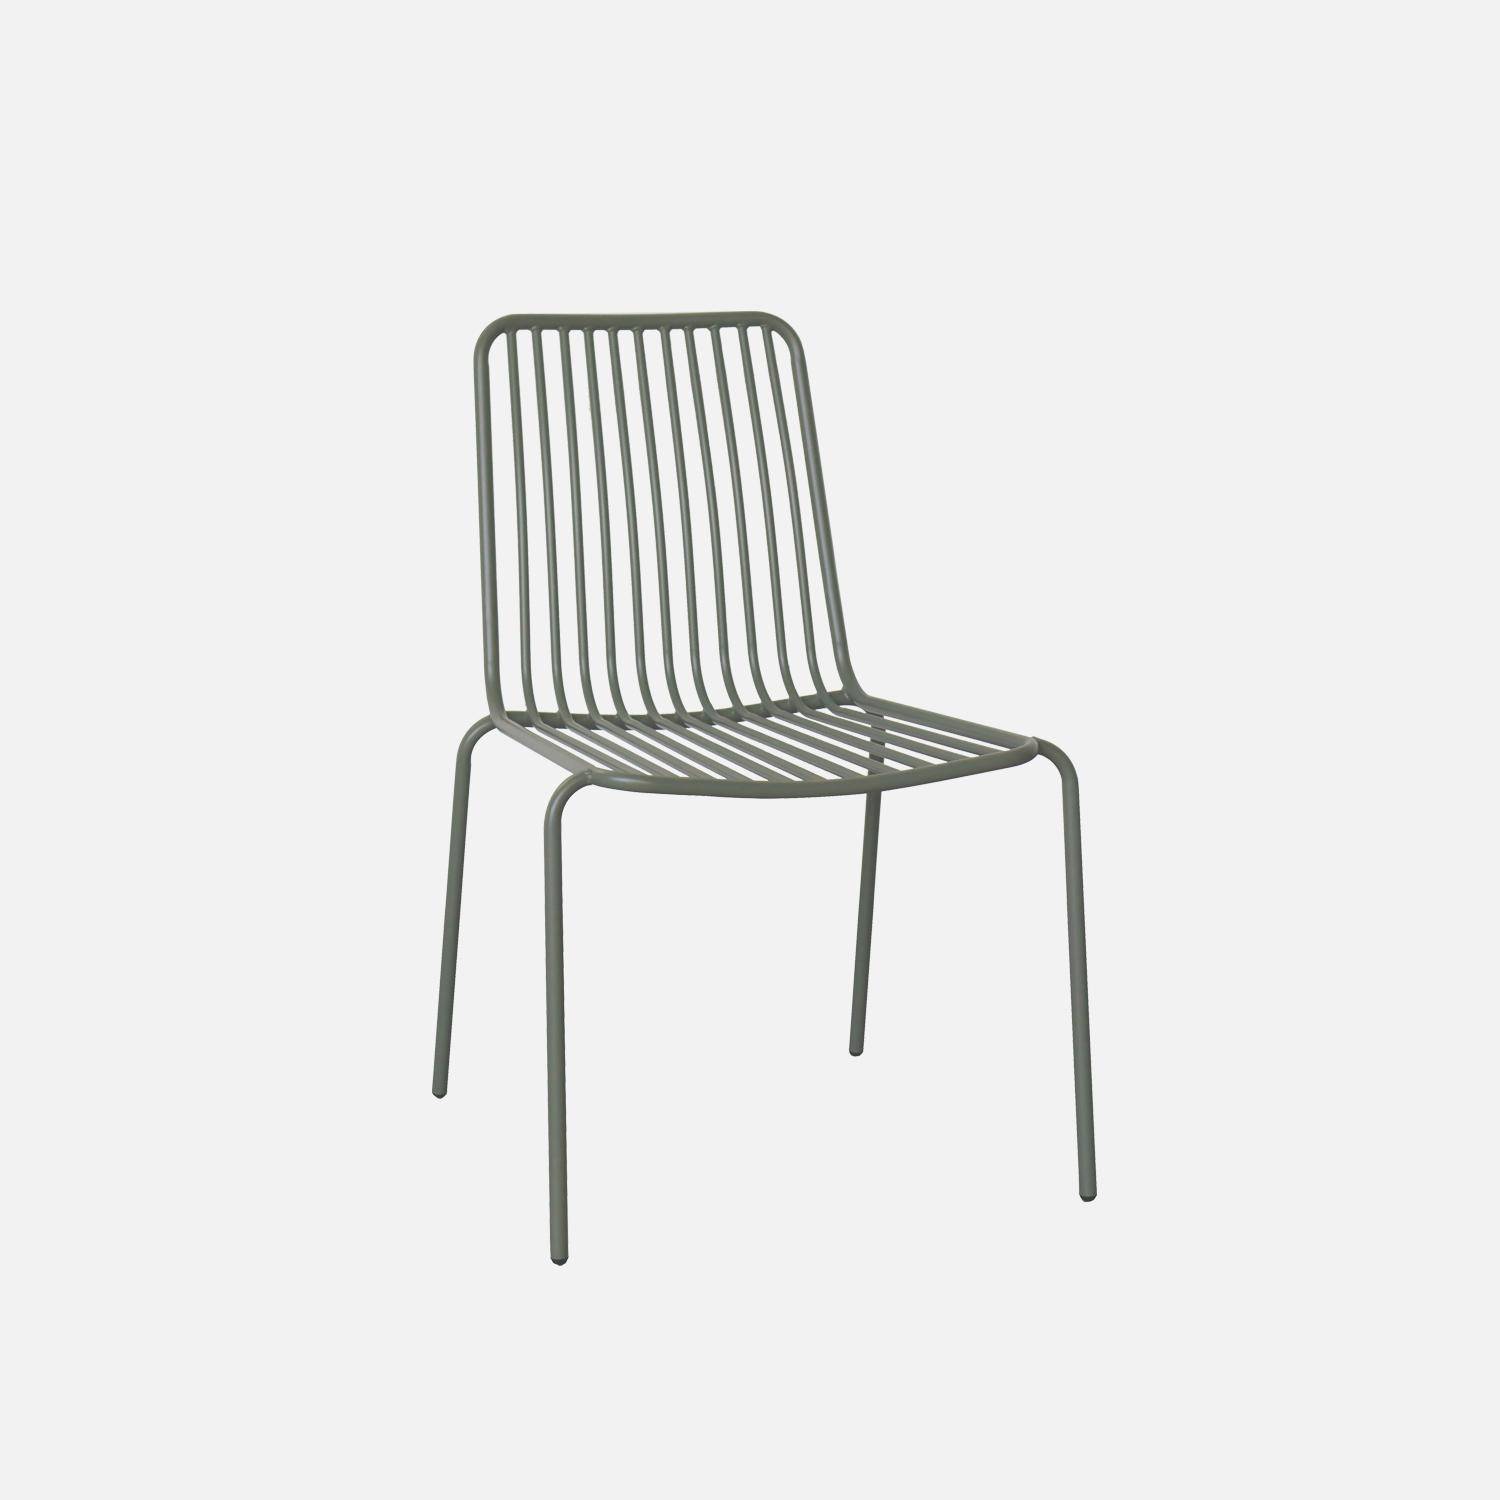 Lot de 2 chaises de jardin en acier savane, empilables, design linéaire ,sweeek,Photo2